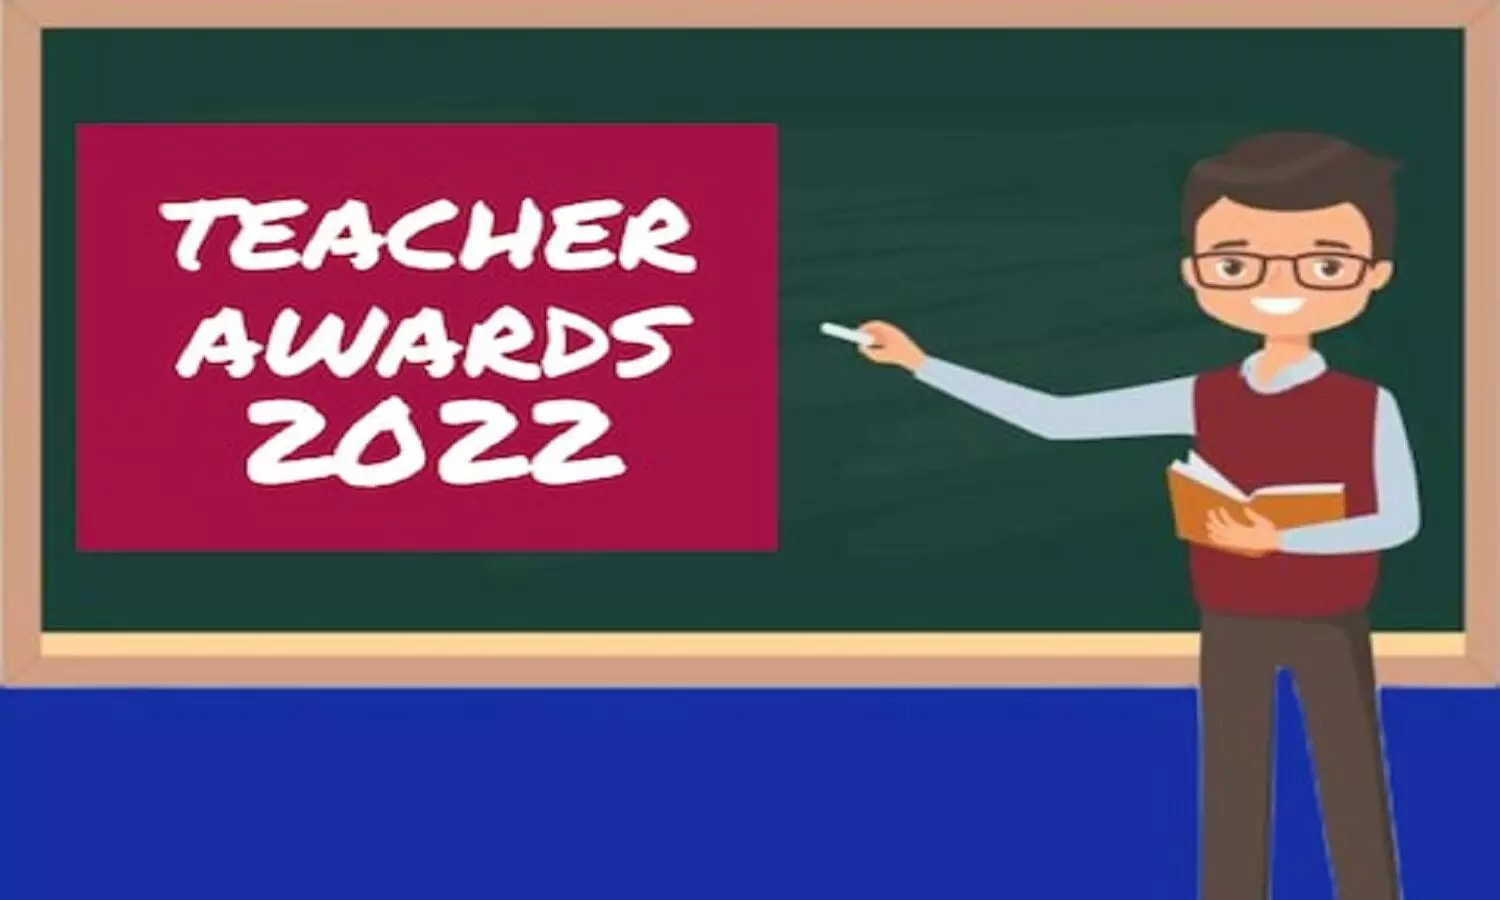 MP State Level Teacher Award 2022: राज्य स्तरीय शिक्षक पुरस्कार से शिक्षक दिवस पर सम्मानित होंगे प्रदेश के कई शिक्षक, रीवा से इनका नाम शामिल